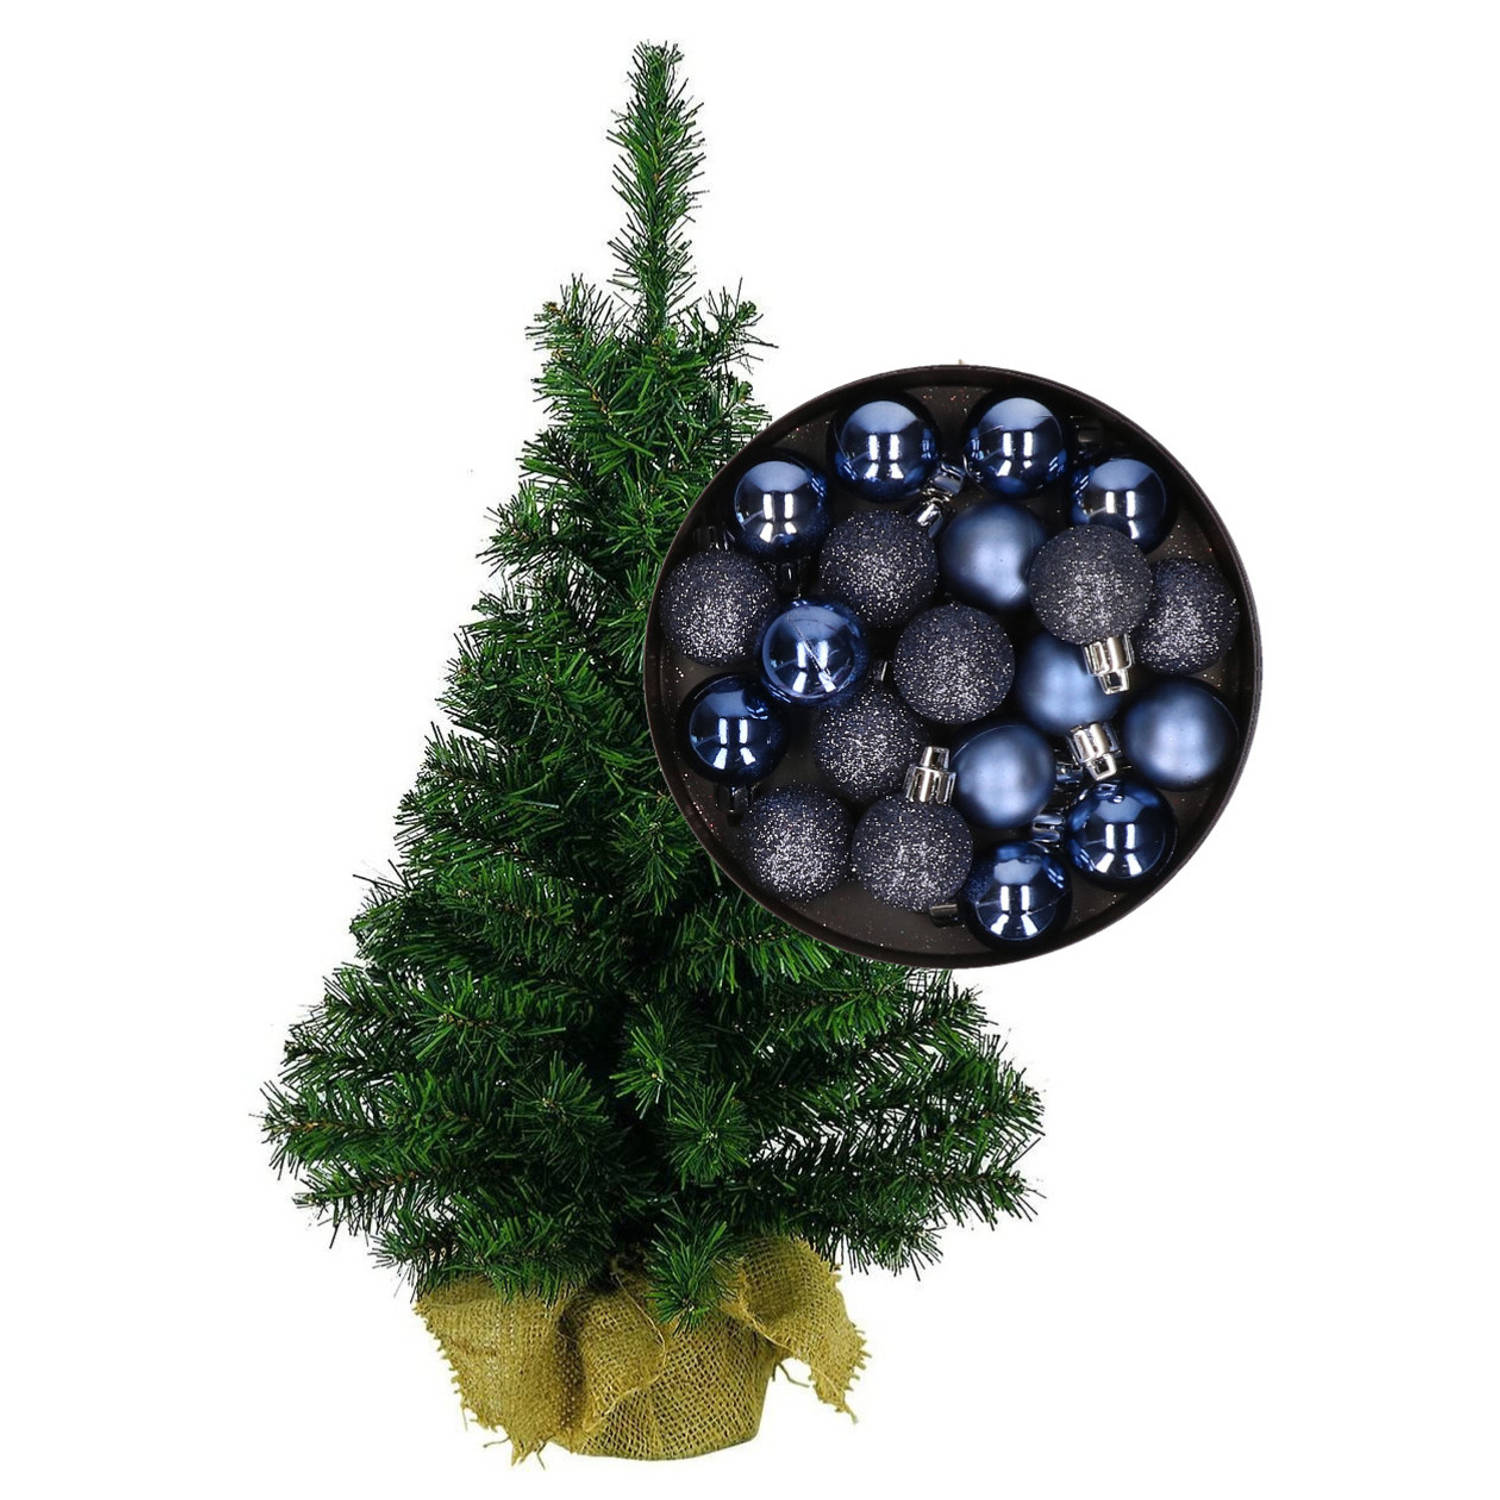 Mini kerstboom-kunst kerstboom H75 cm inclusief kerstballen donkerblauw Kunstkerstboom